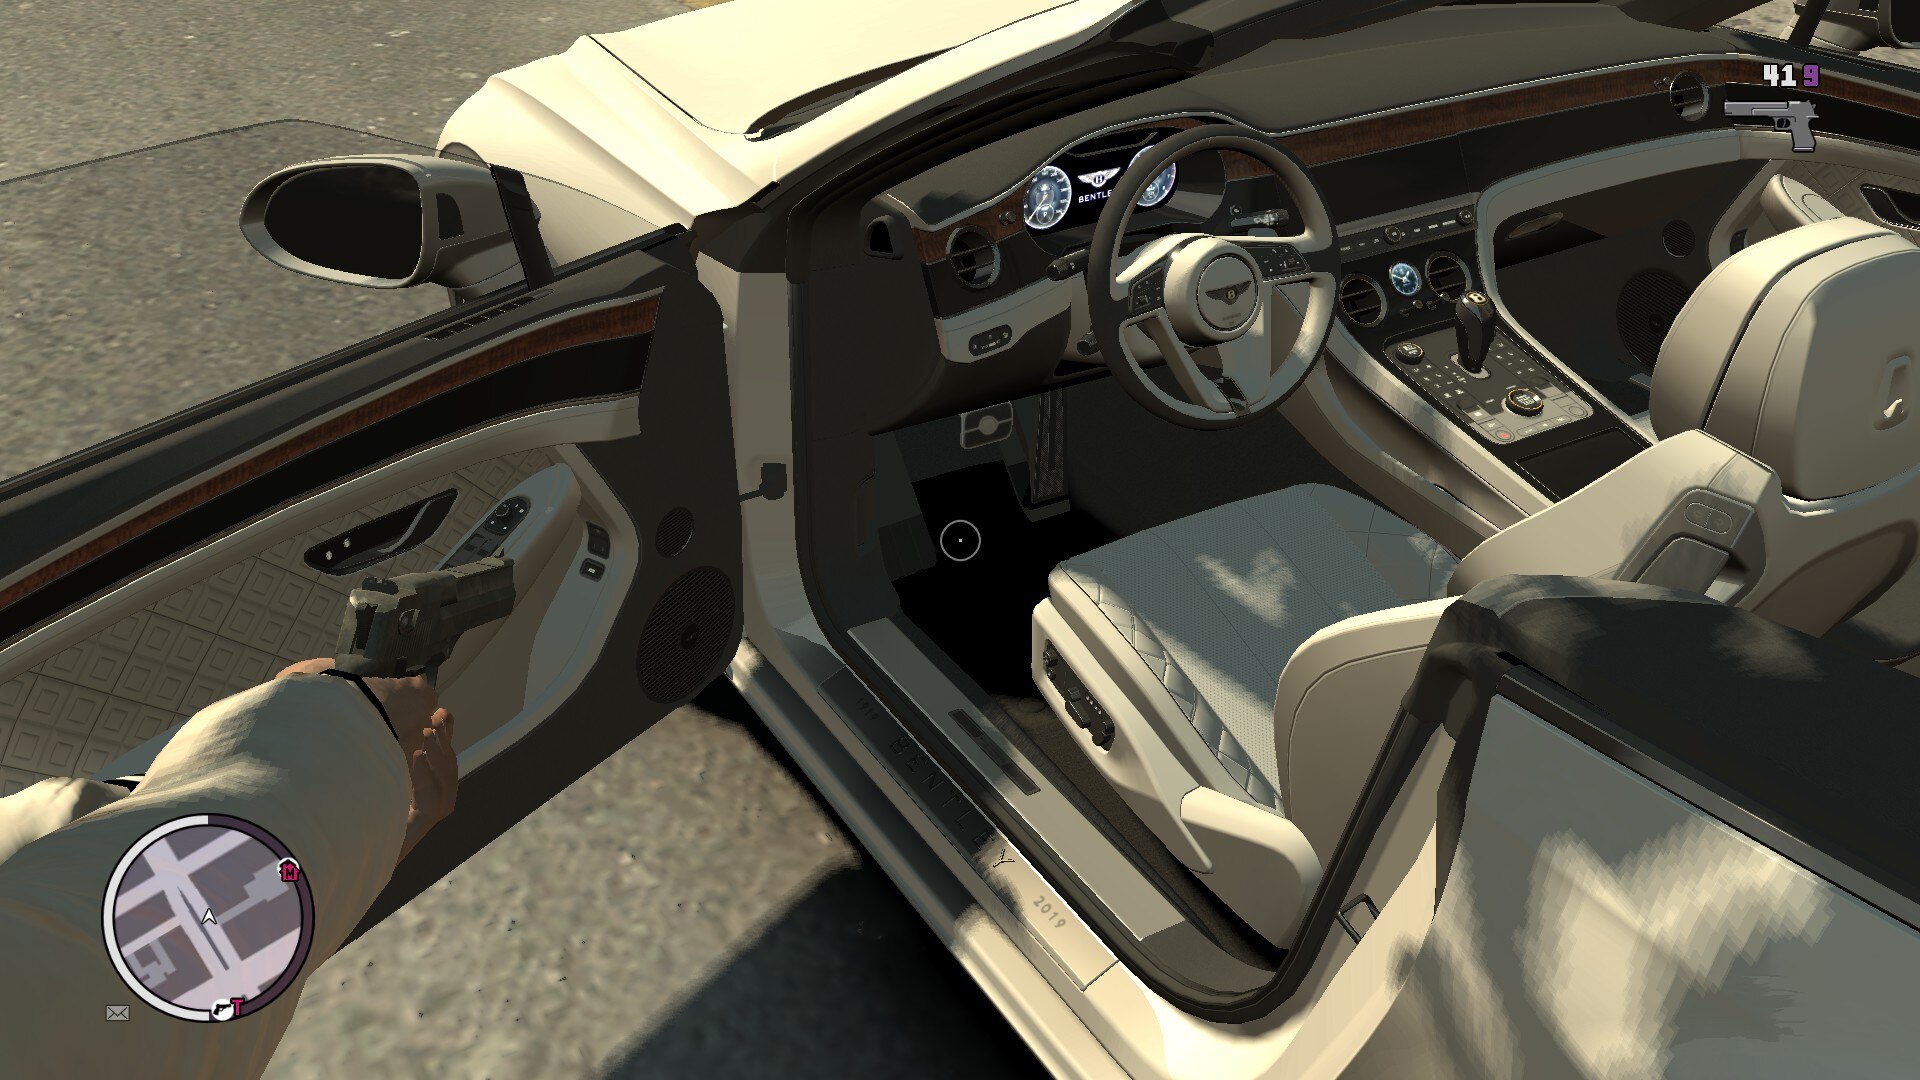 GTA 4 arabaların üstü açılıyor mu? | Technopat Sosyal